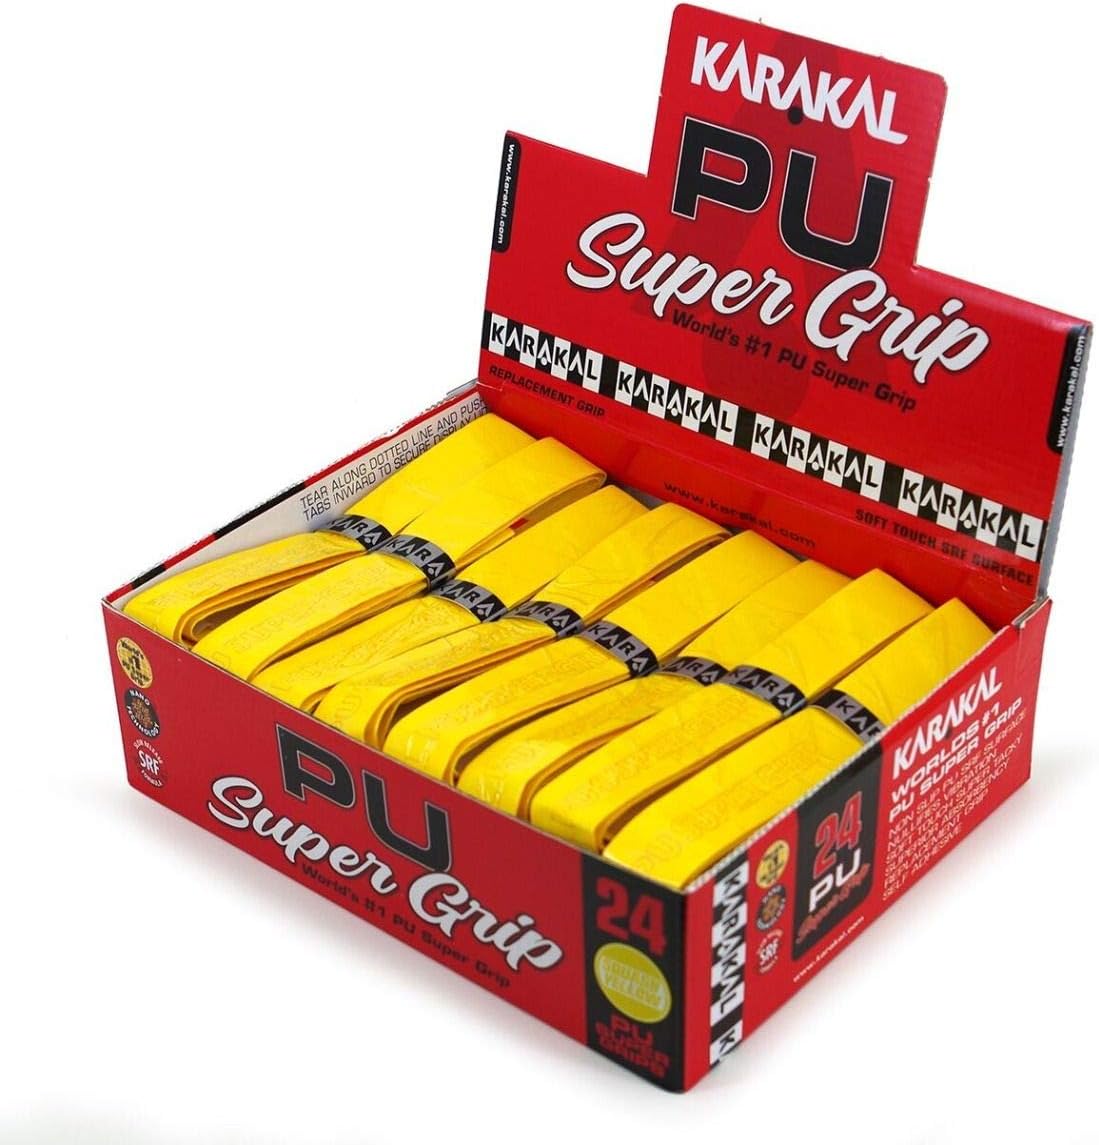 Karakal Basisgriffband PU Super Grip yellow 24 Grips